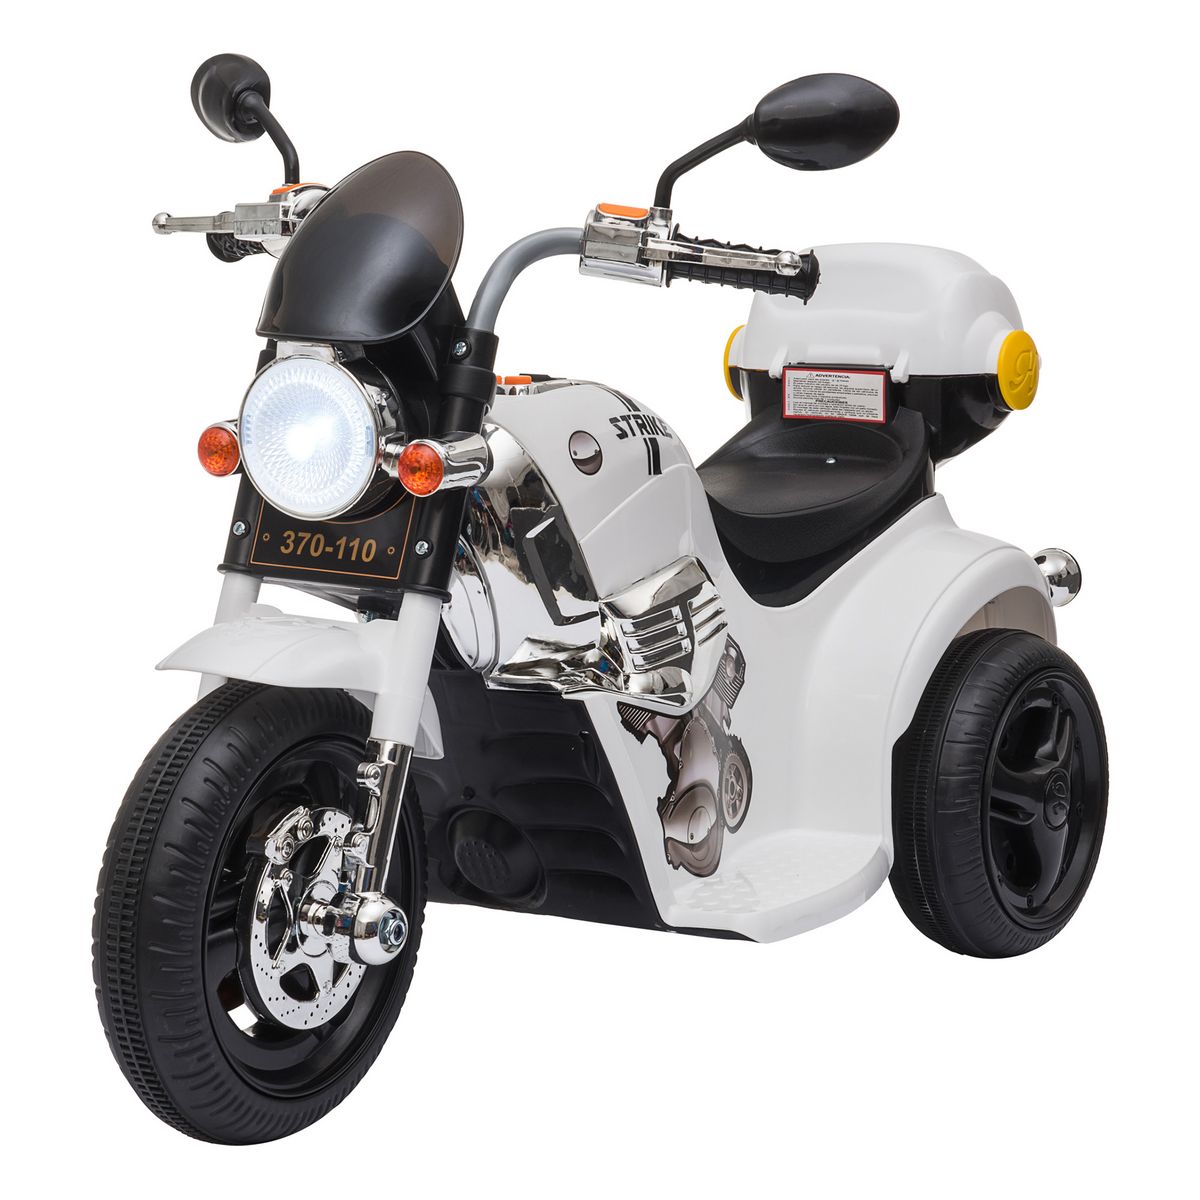 HOMCOM Moto électrique pour enfants scooter 3 roues 6 V 3 Km/h effets lumineux et sonores top case blanc